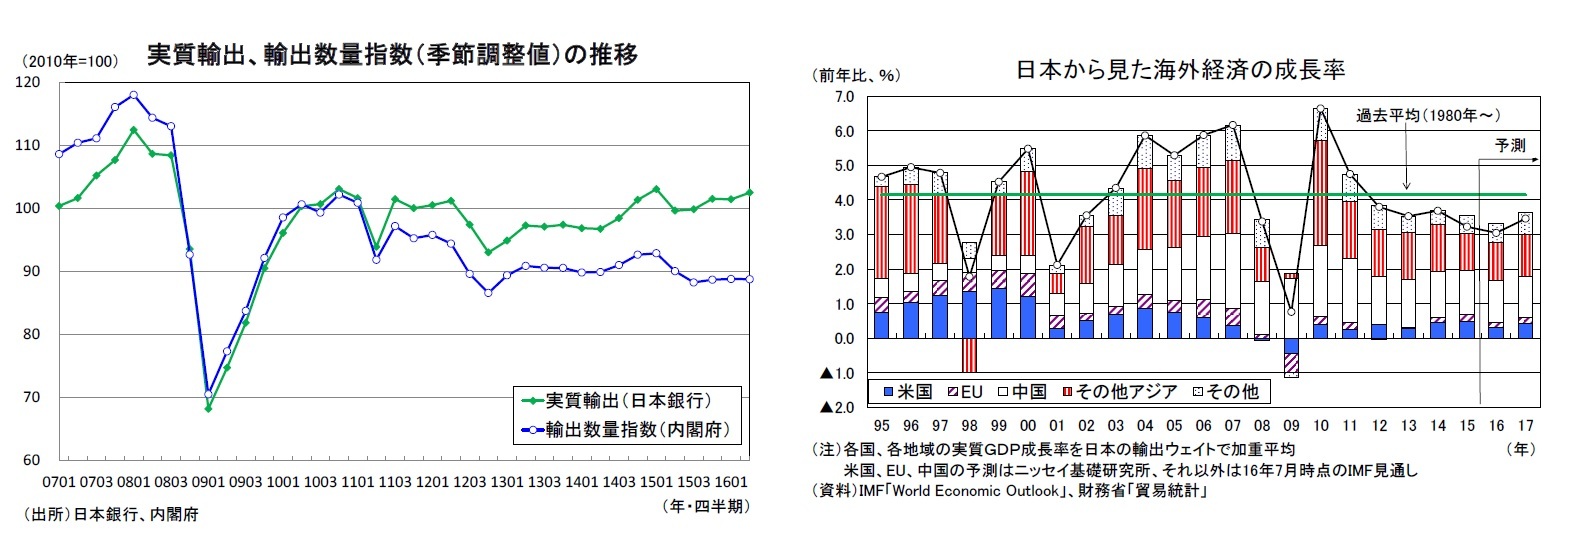 実質輸出、輸出数量指数（季節調整値）の推移/日本から見た海外経済の成長率